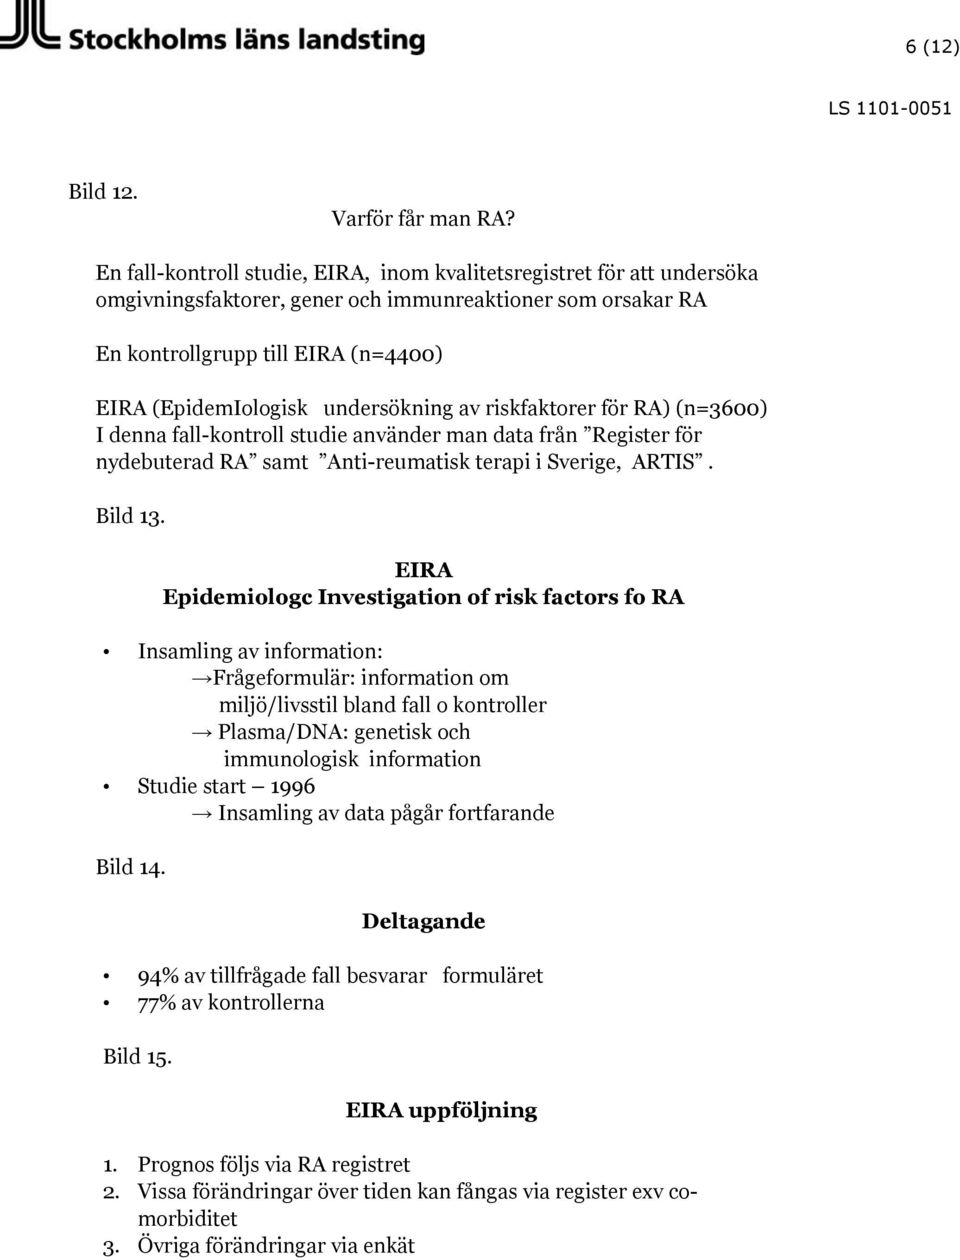 undersökning av riskfaktorer för RA) (n=3600) I denna fall-kontroll studie använder man data från Register för nydebuterad RA samt Anti-reumatisk terapi i Sverige, ARTIS. Bild 13.